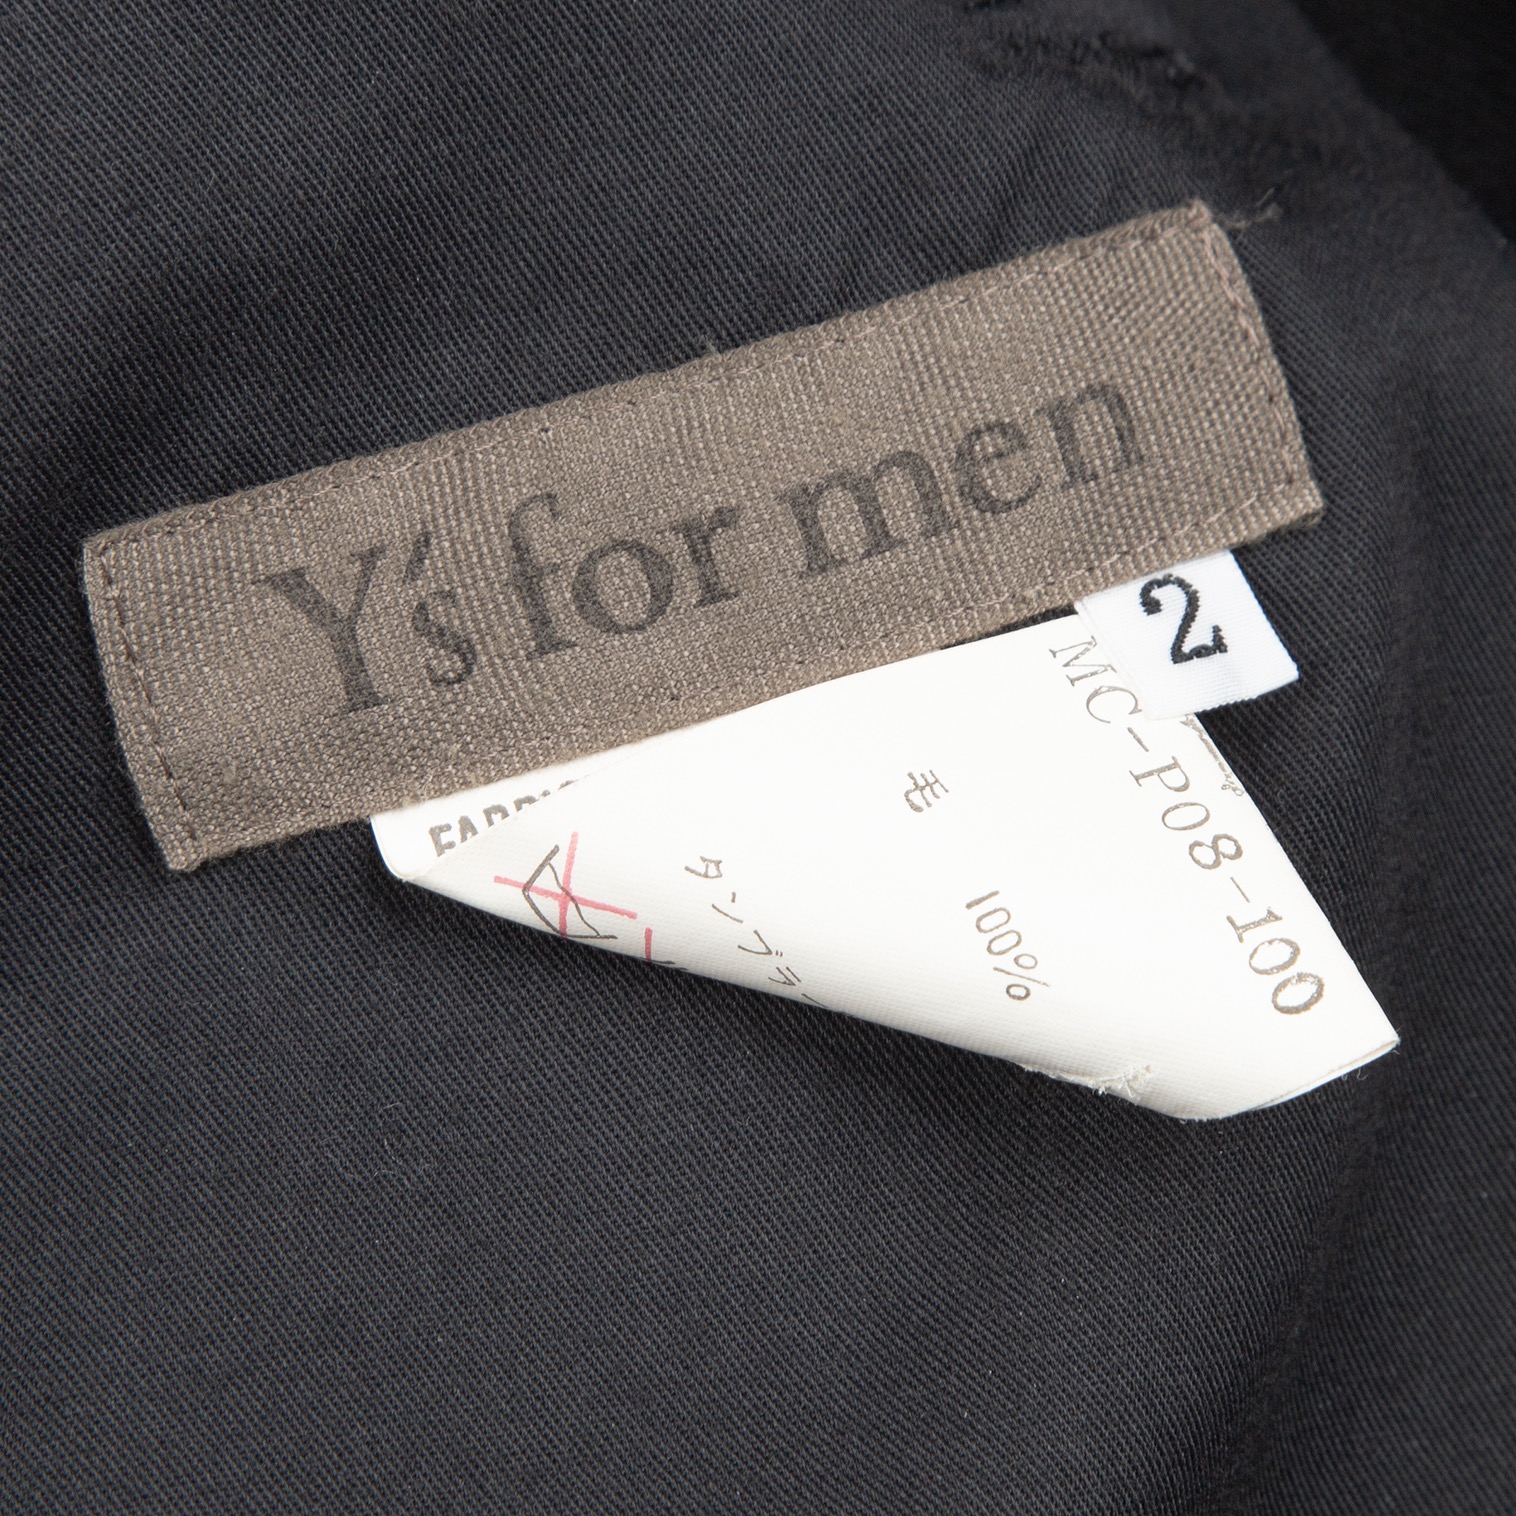 ワイズフォーメンY's for men オールドギャバ裁ち切替デザイン紐パンツ 黒2